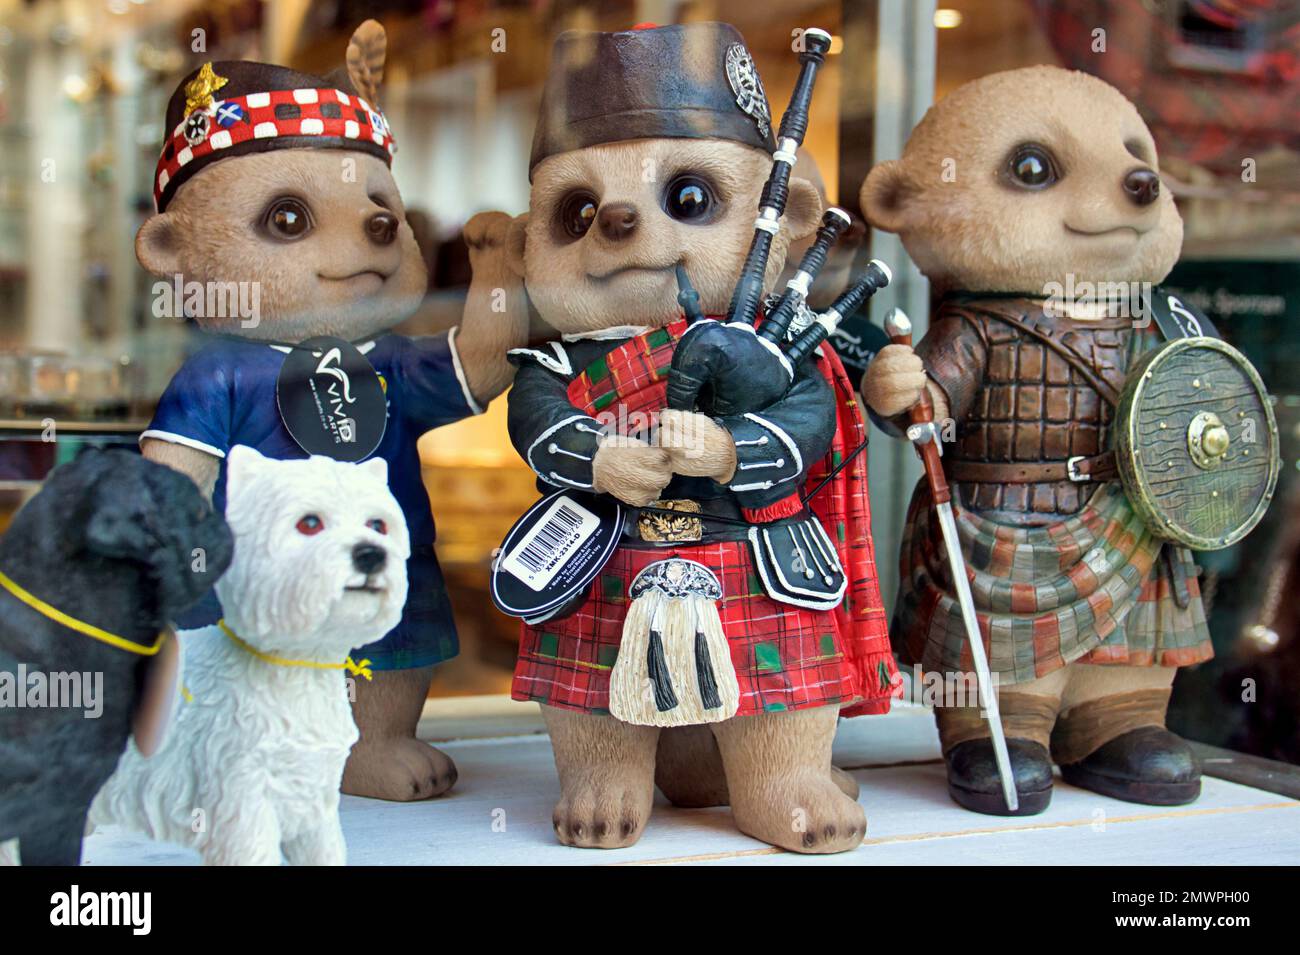 La tienda Vivid Arts Meerkats exhibe recuerdos escoceses Foto de stock